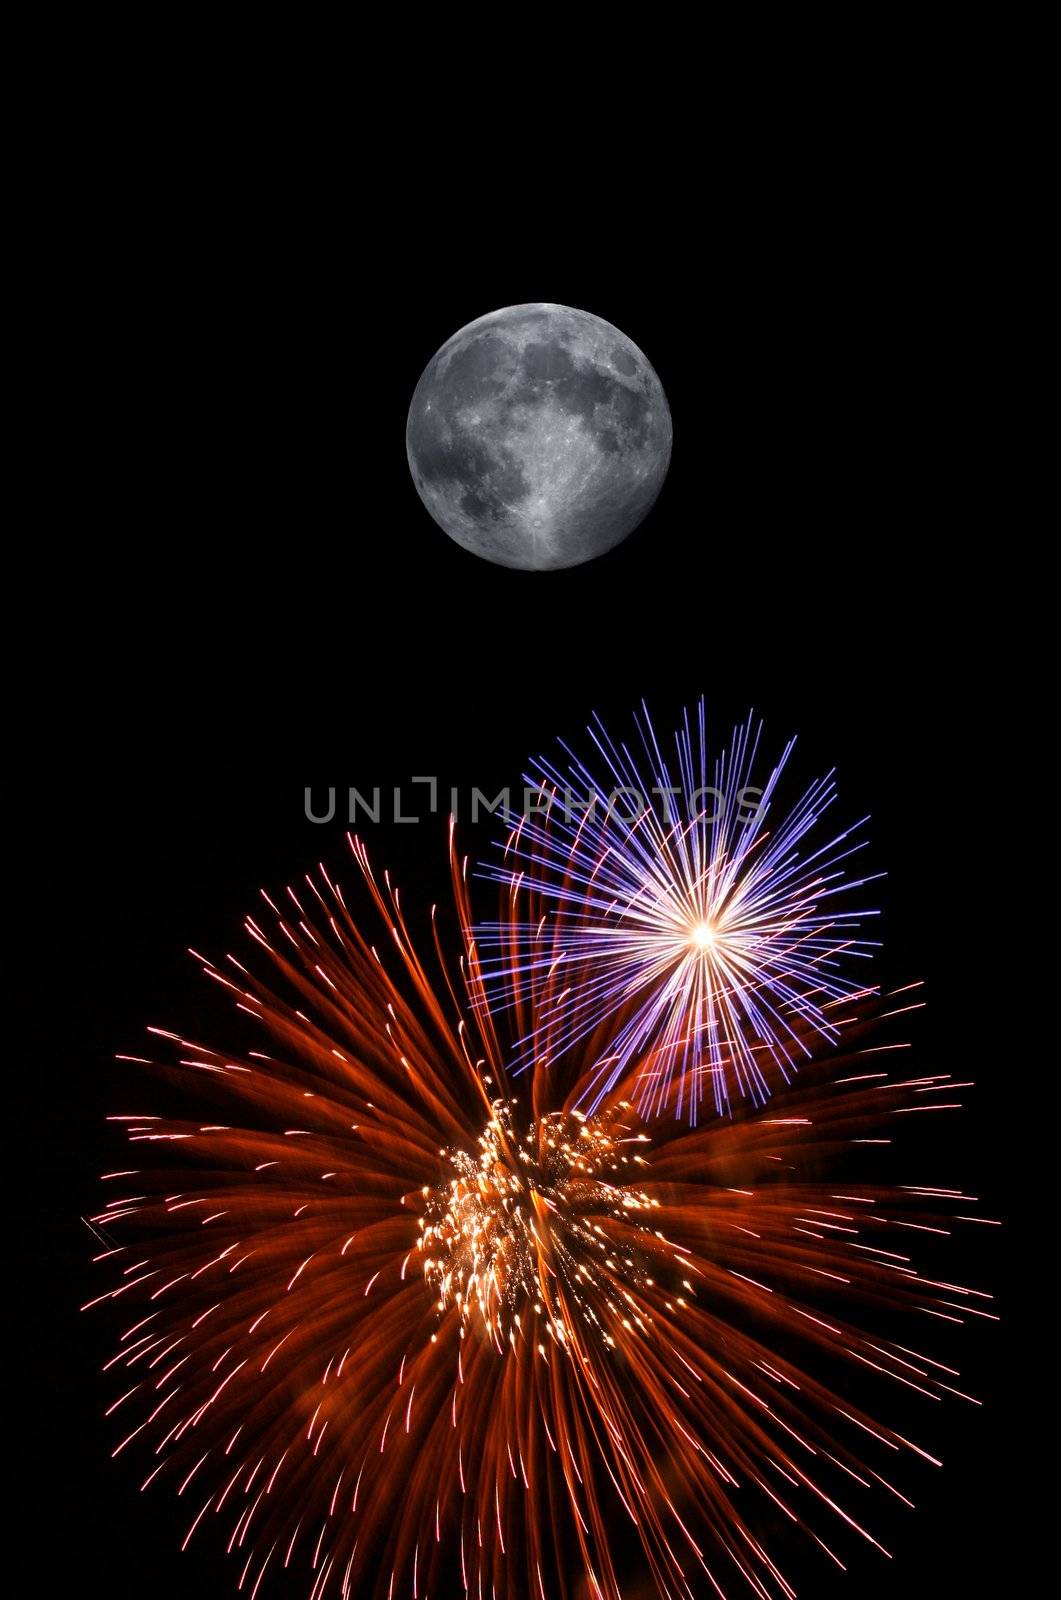 Full moon and fireworks by klikk